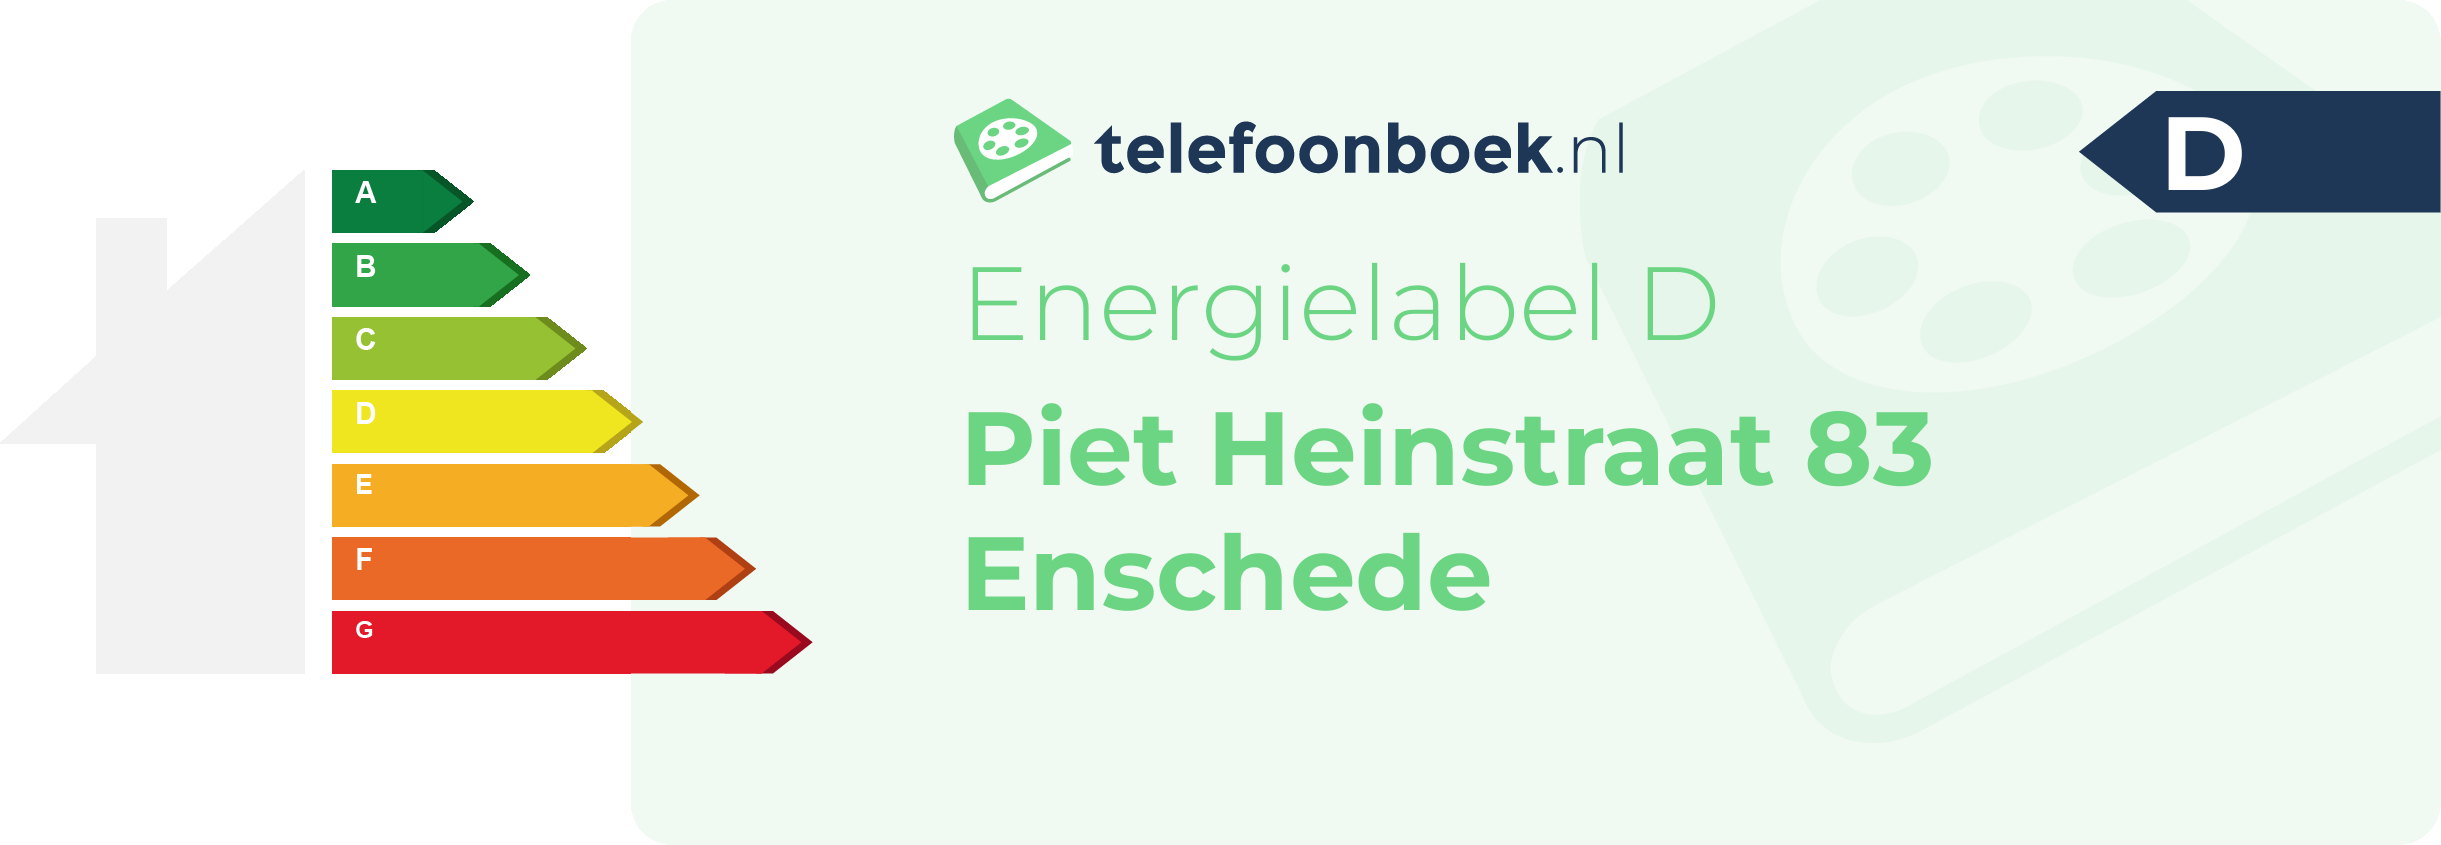 Energielabel Piet Heinstraat 83 Enschede